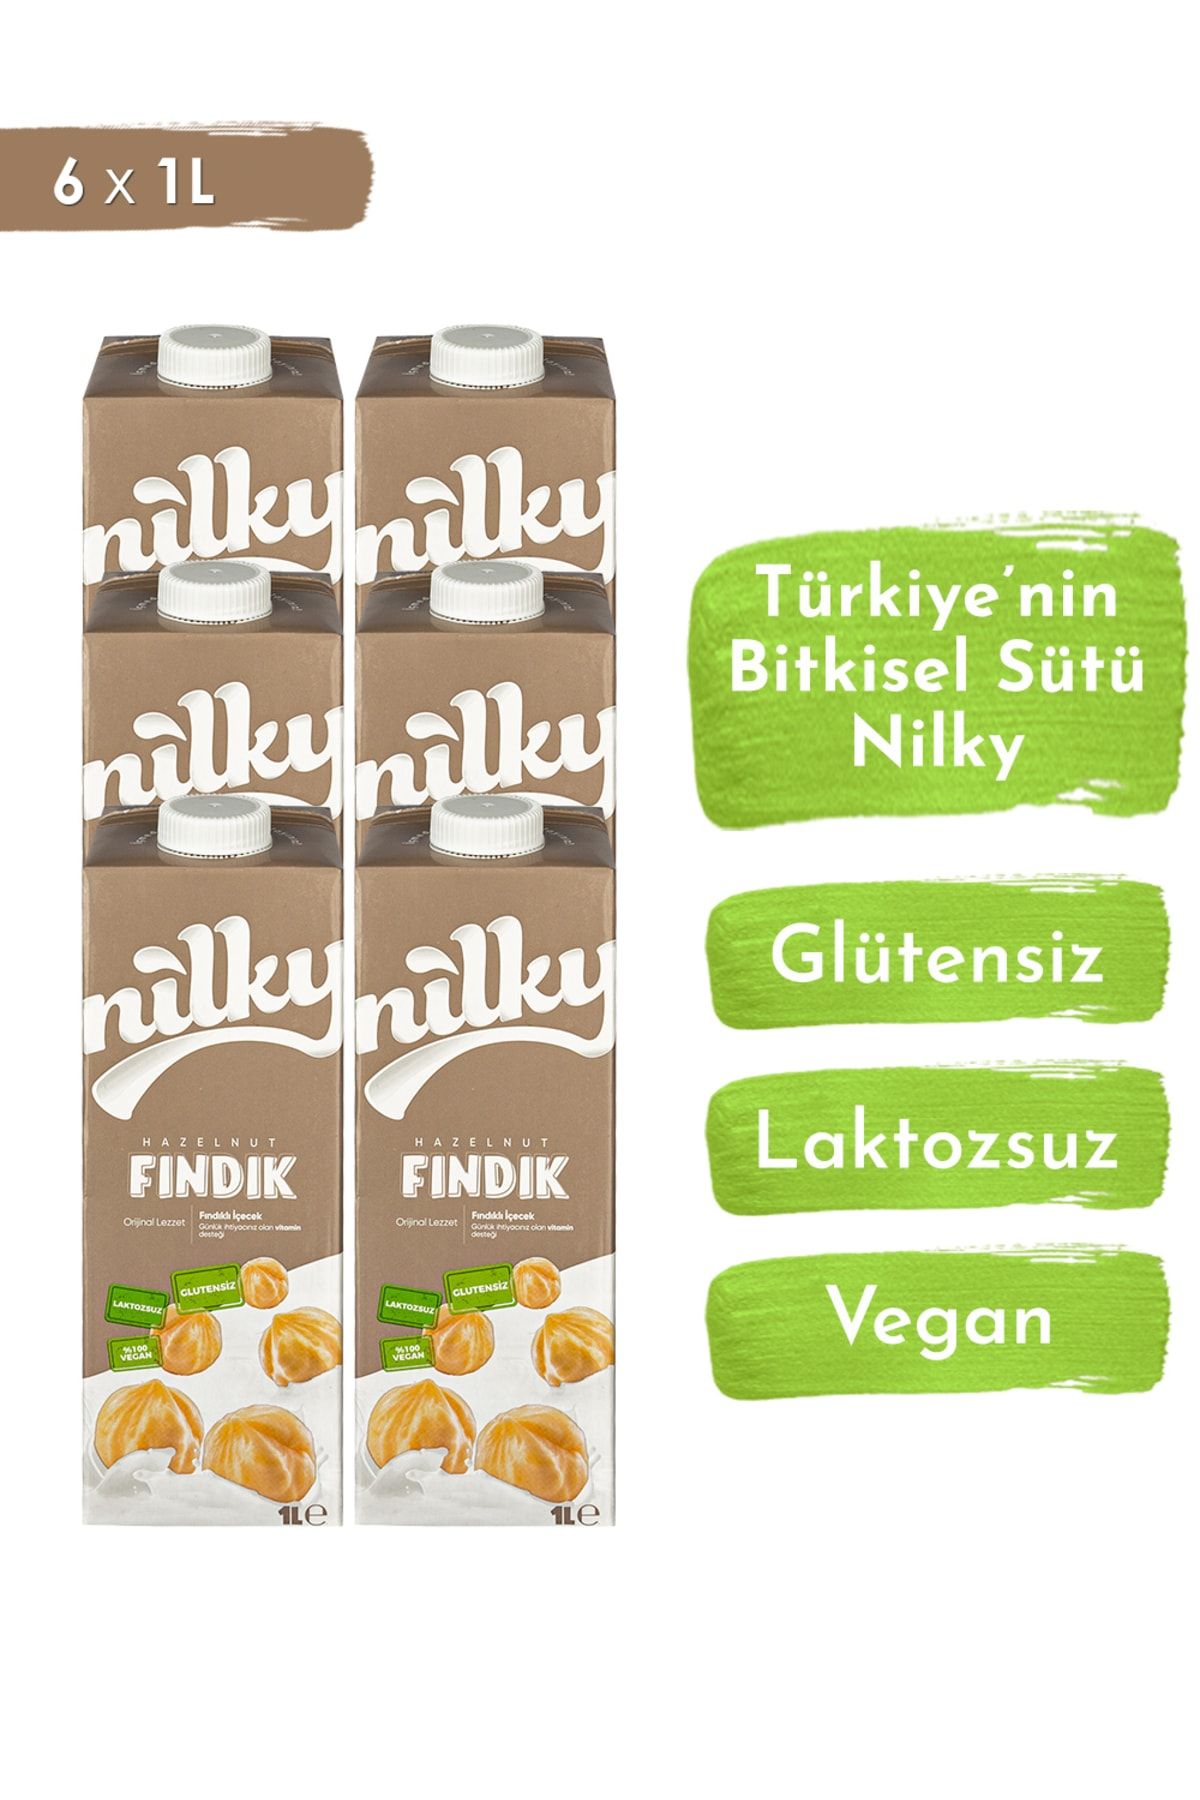 NİLKY Fındık Sütü Glütensiz Bitkisel Bazlı Laktosuz Vegan 6x1 Lt